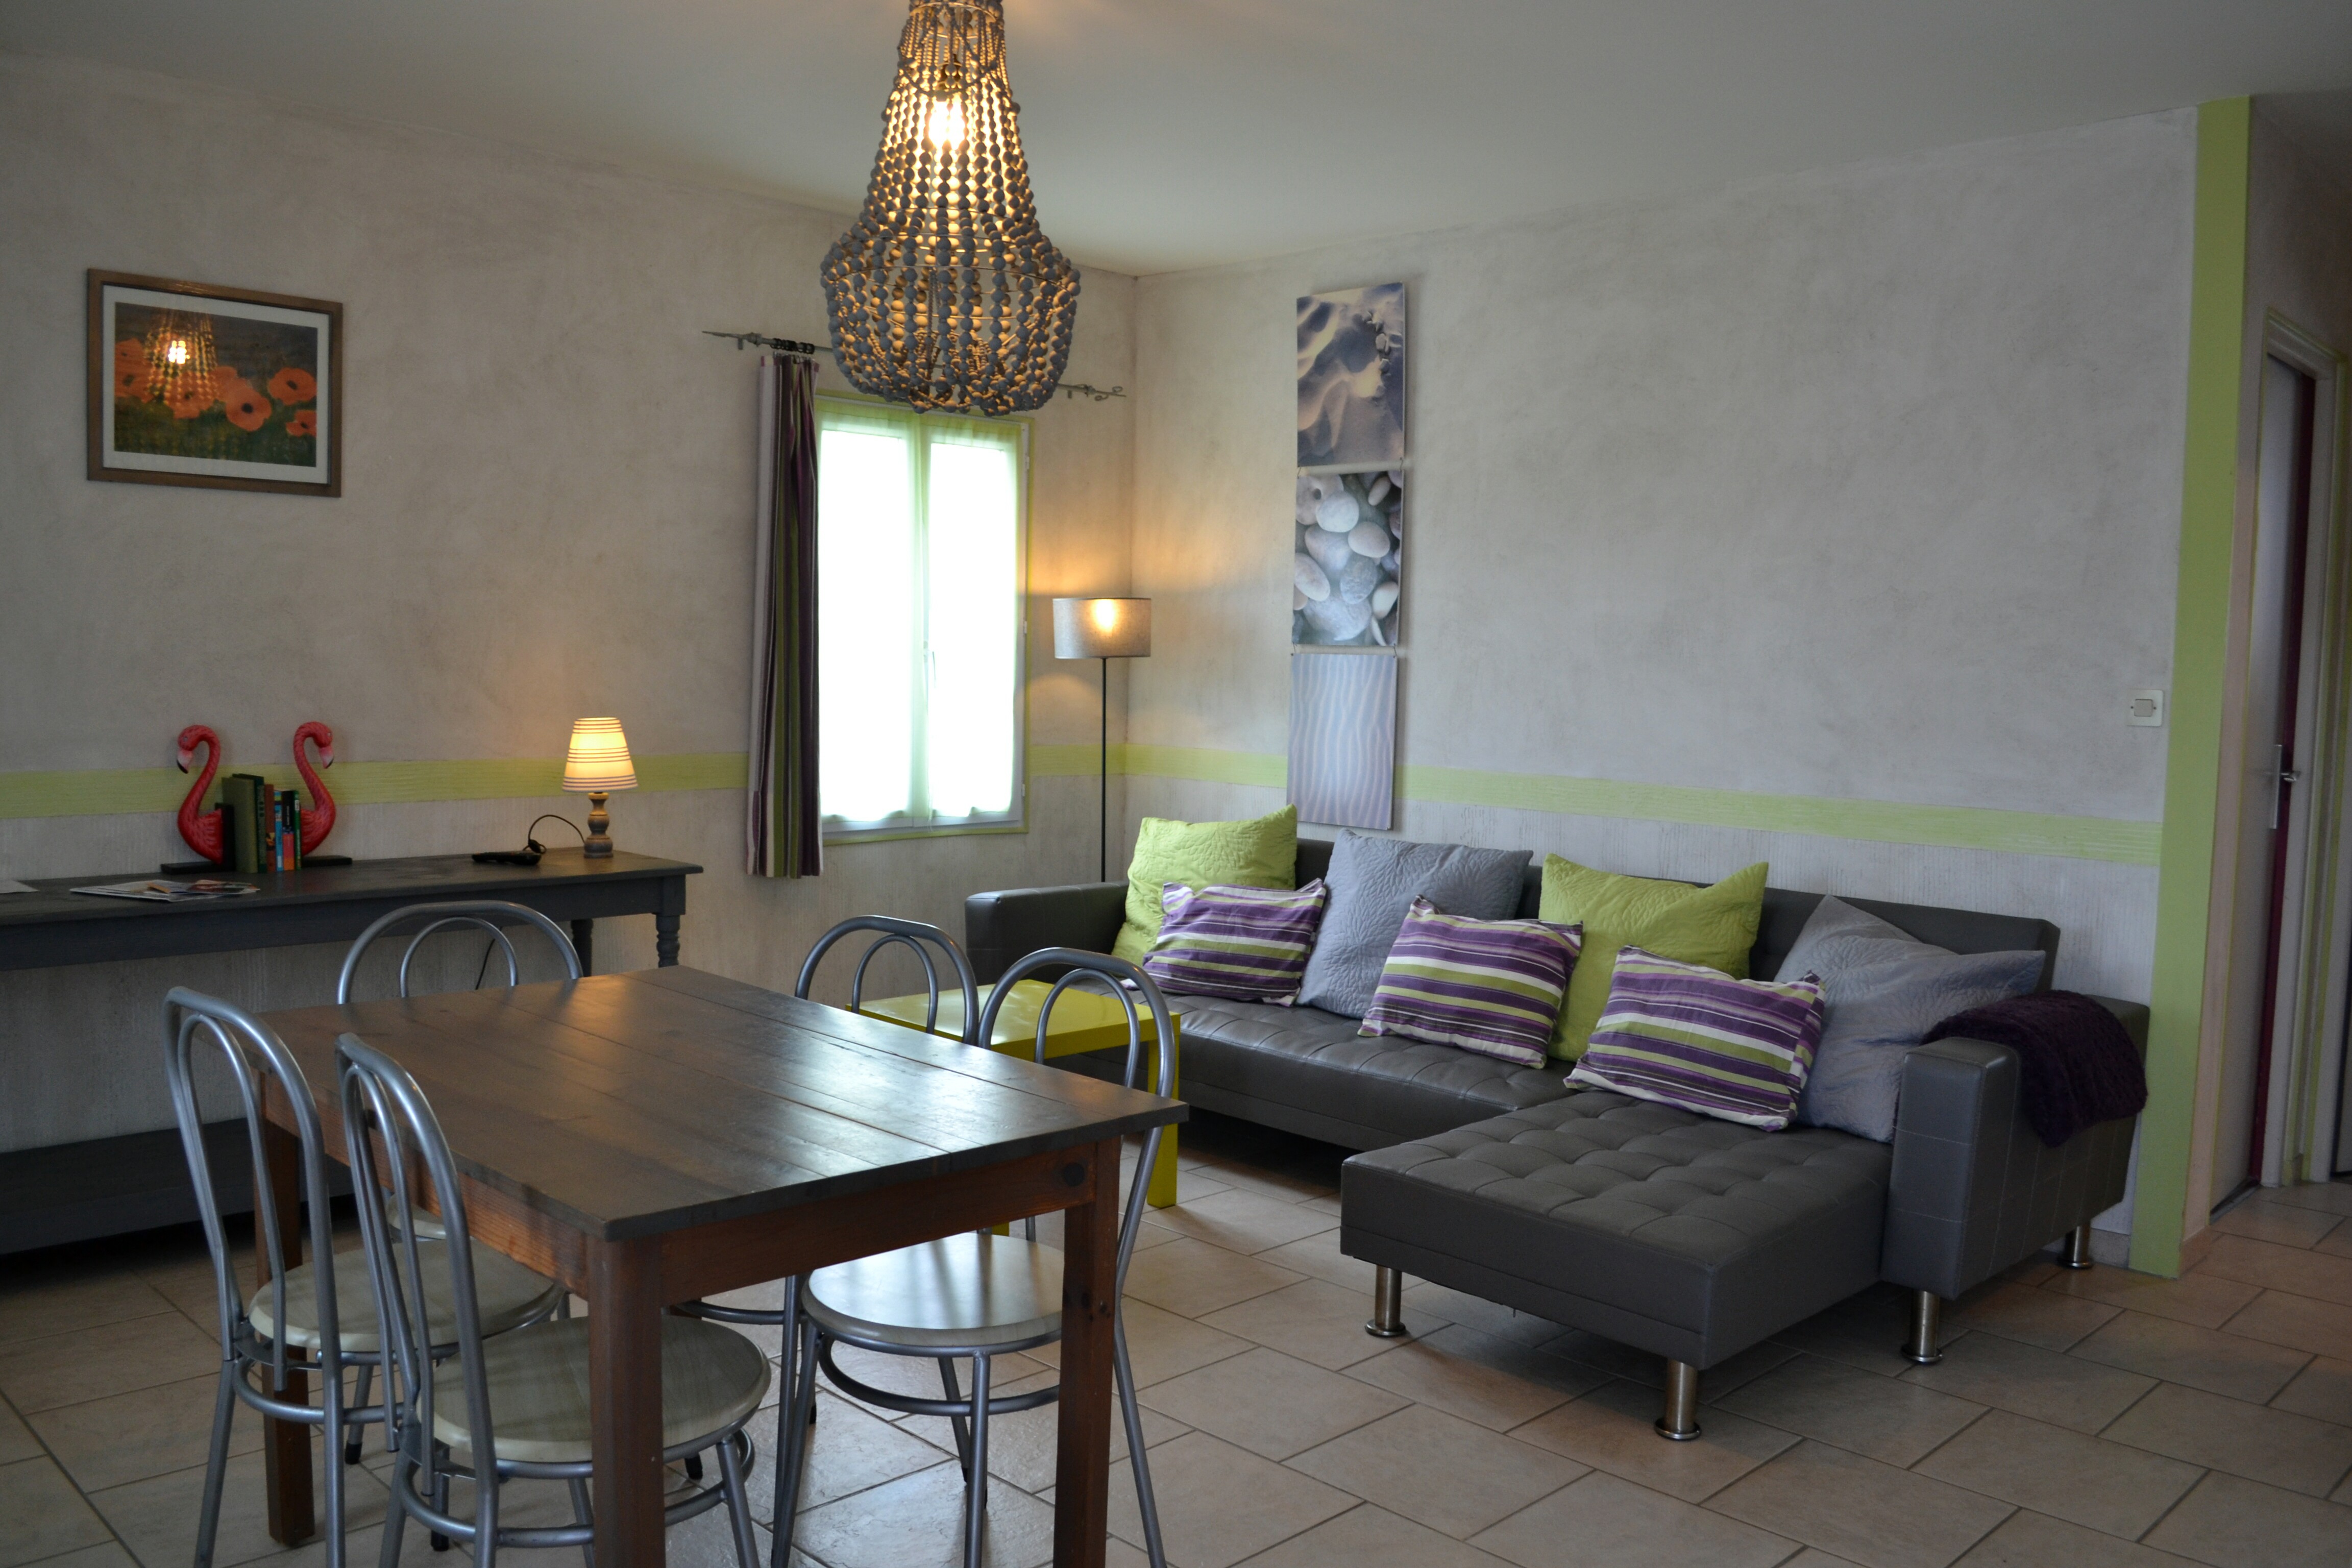 Suite-appartement Doridelle 4 personnes - A 150 mètres de la plage de la Menounière - proche de la Cotinière - Charente Maritime - île d'Oléron